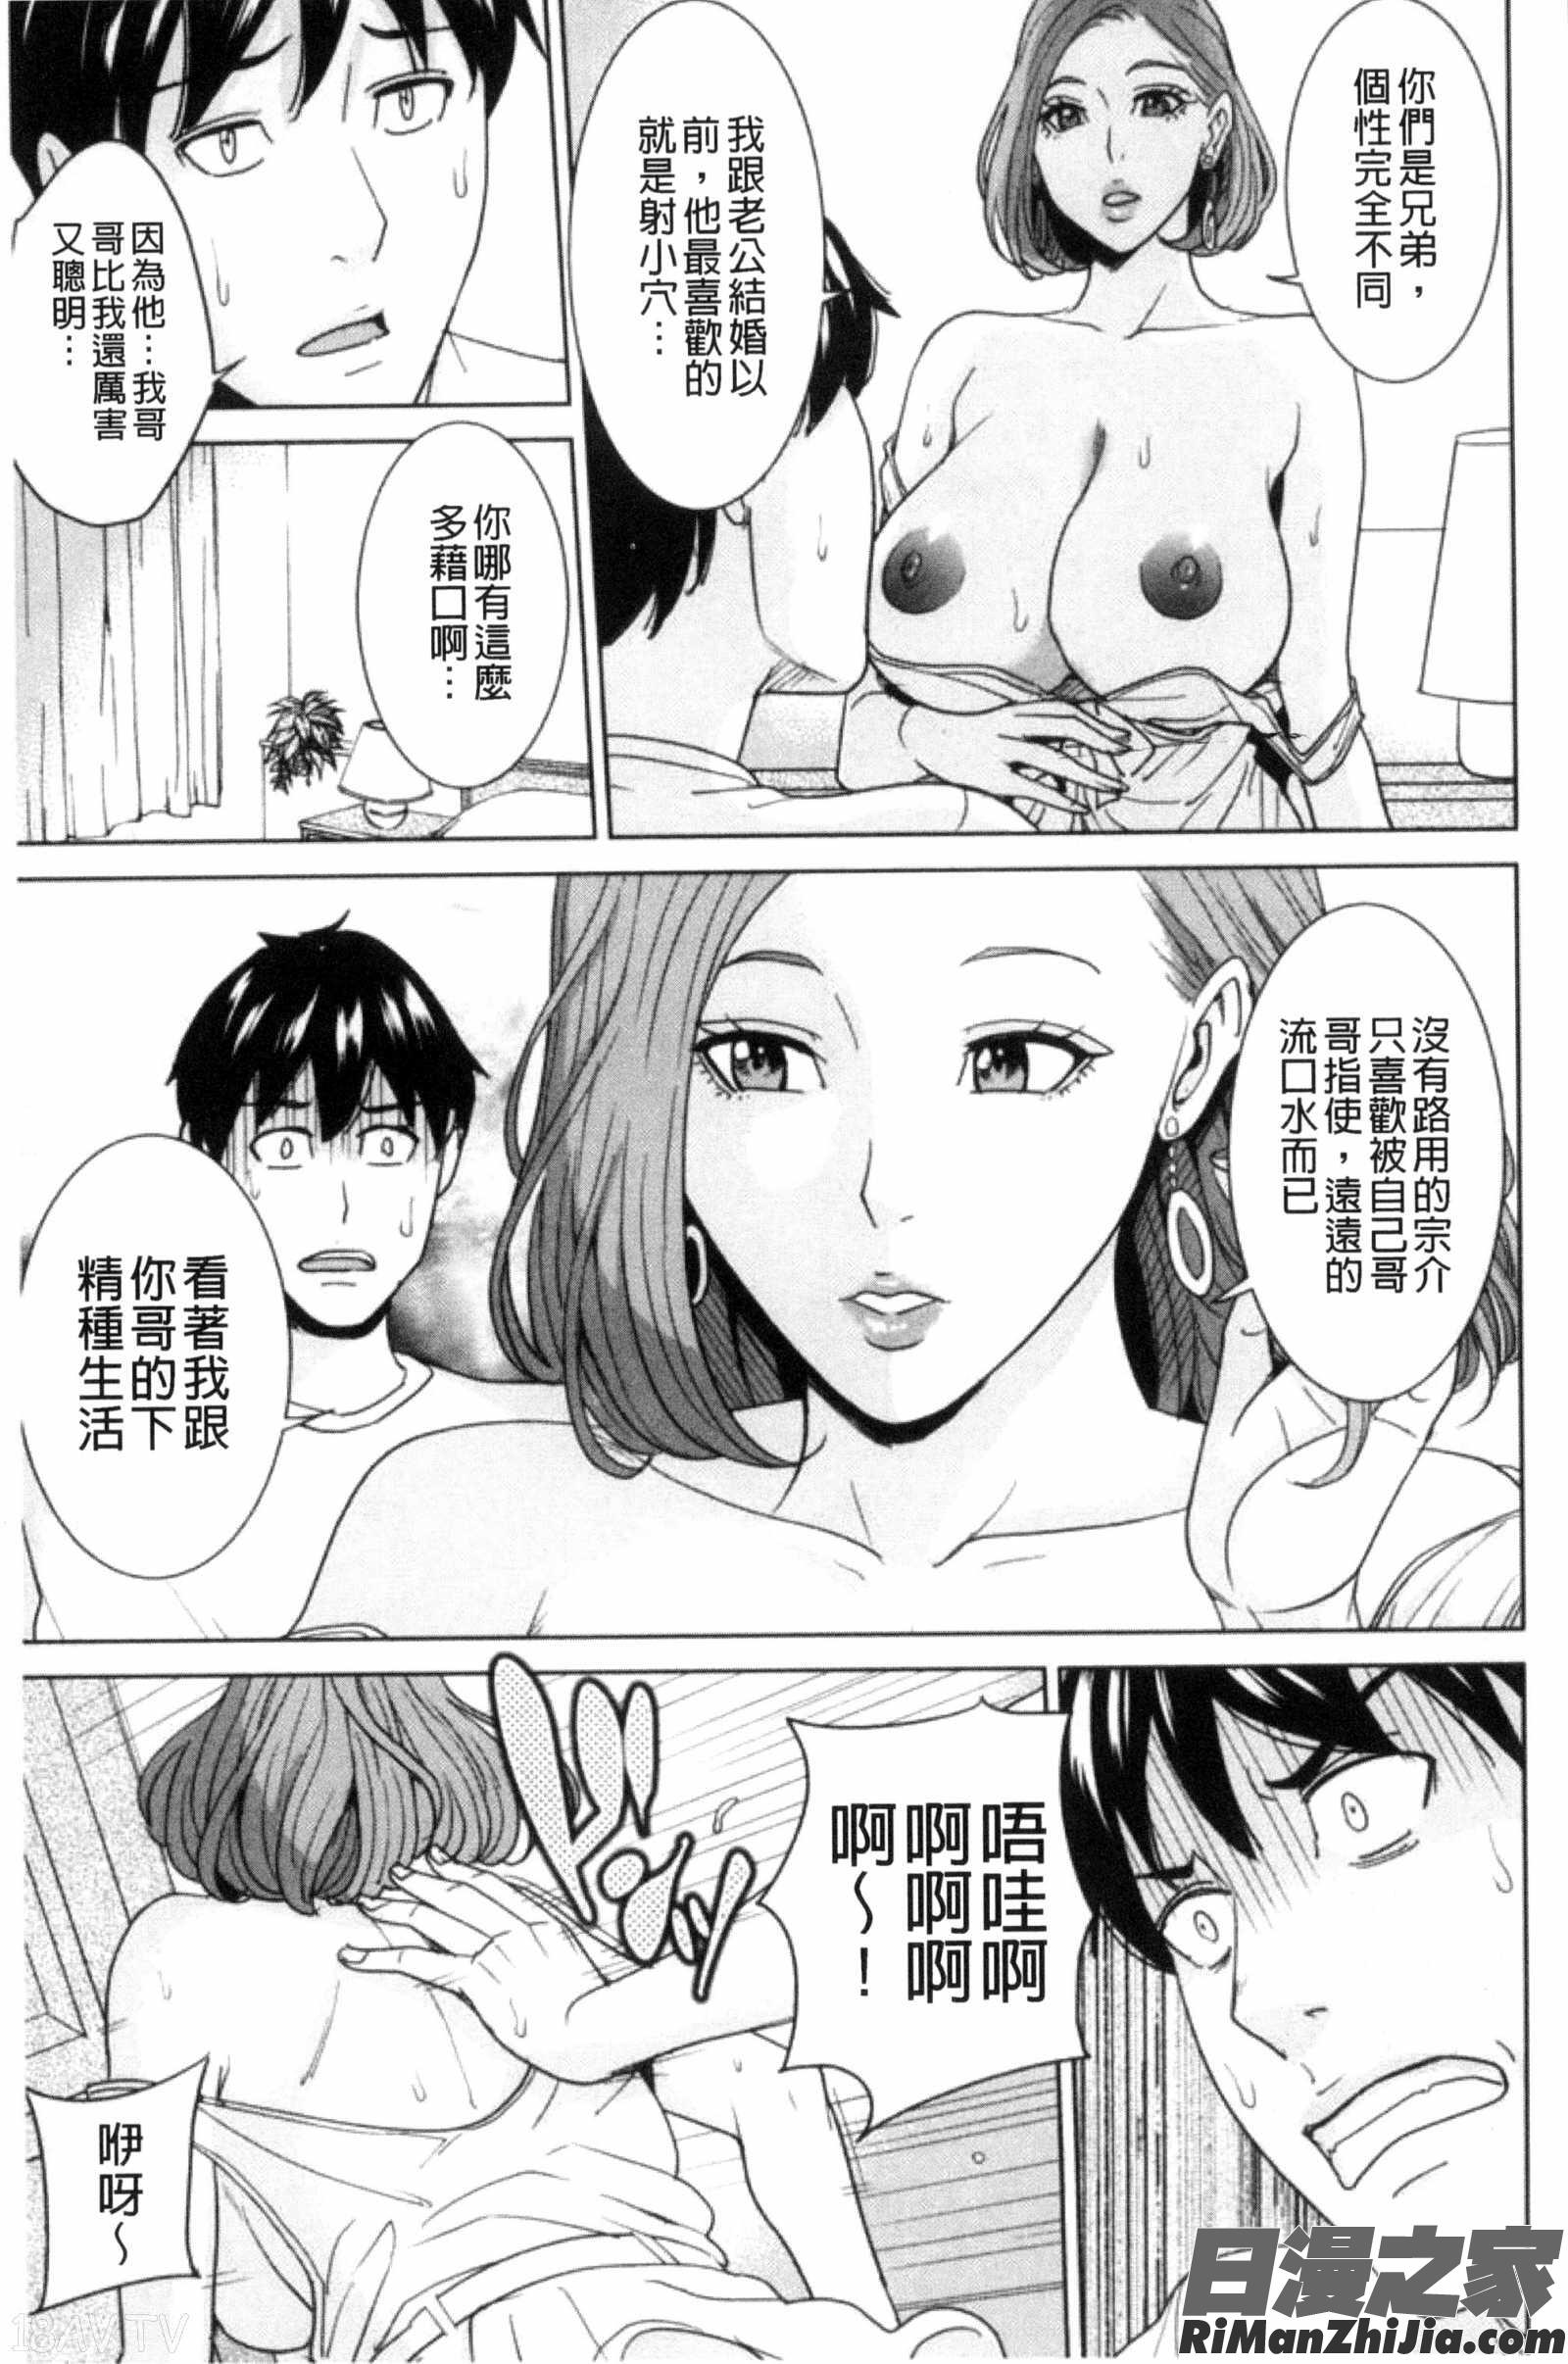 兄嫂淫蕩女性生活_兄嫁ビッチライフ漫画 免费阅读 整部漫画 28.jpg